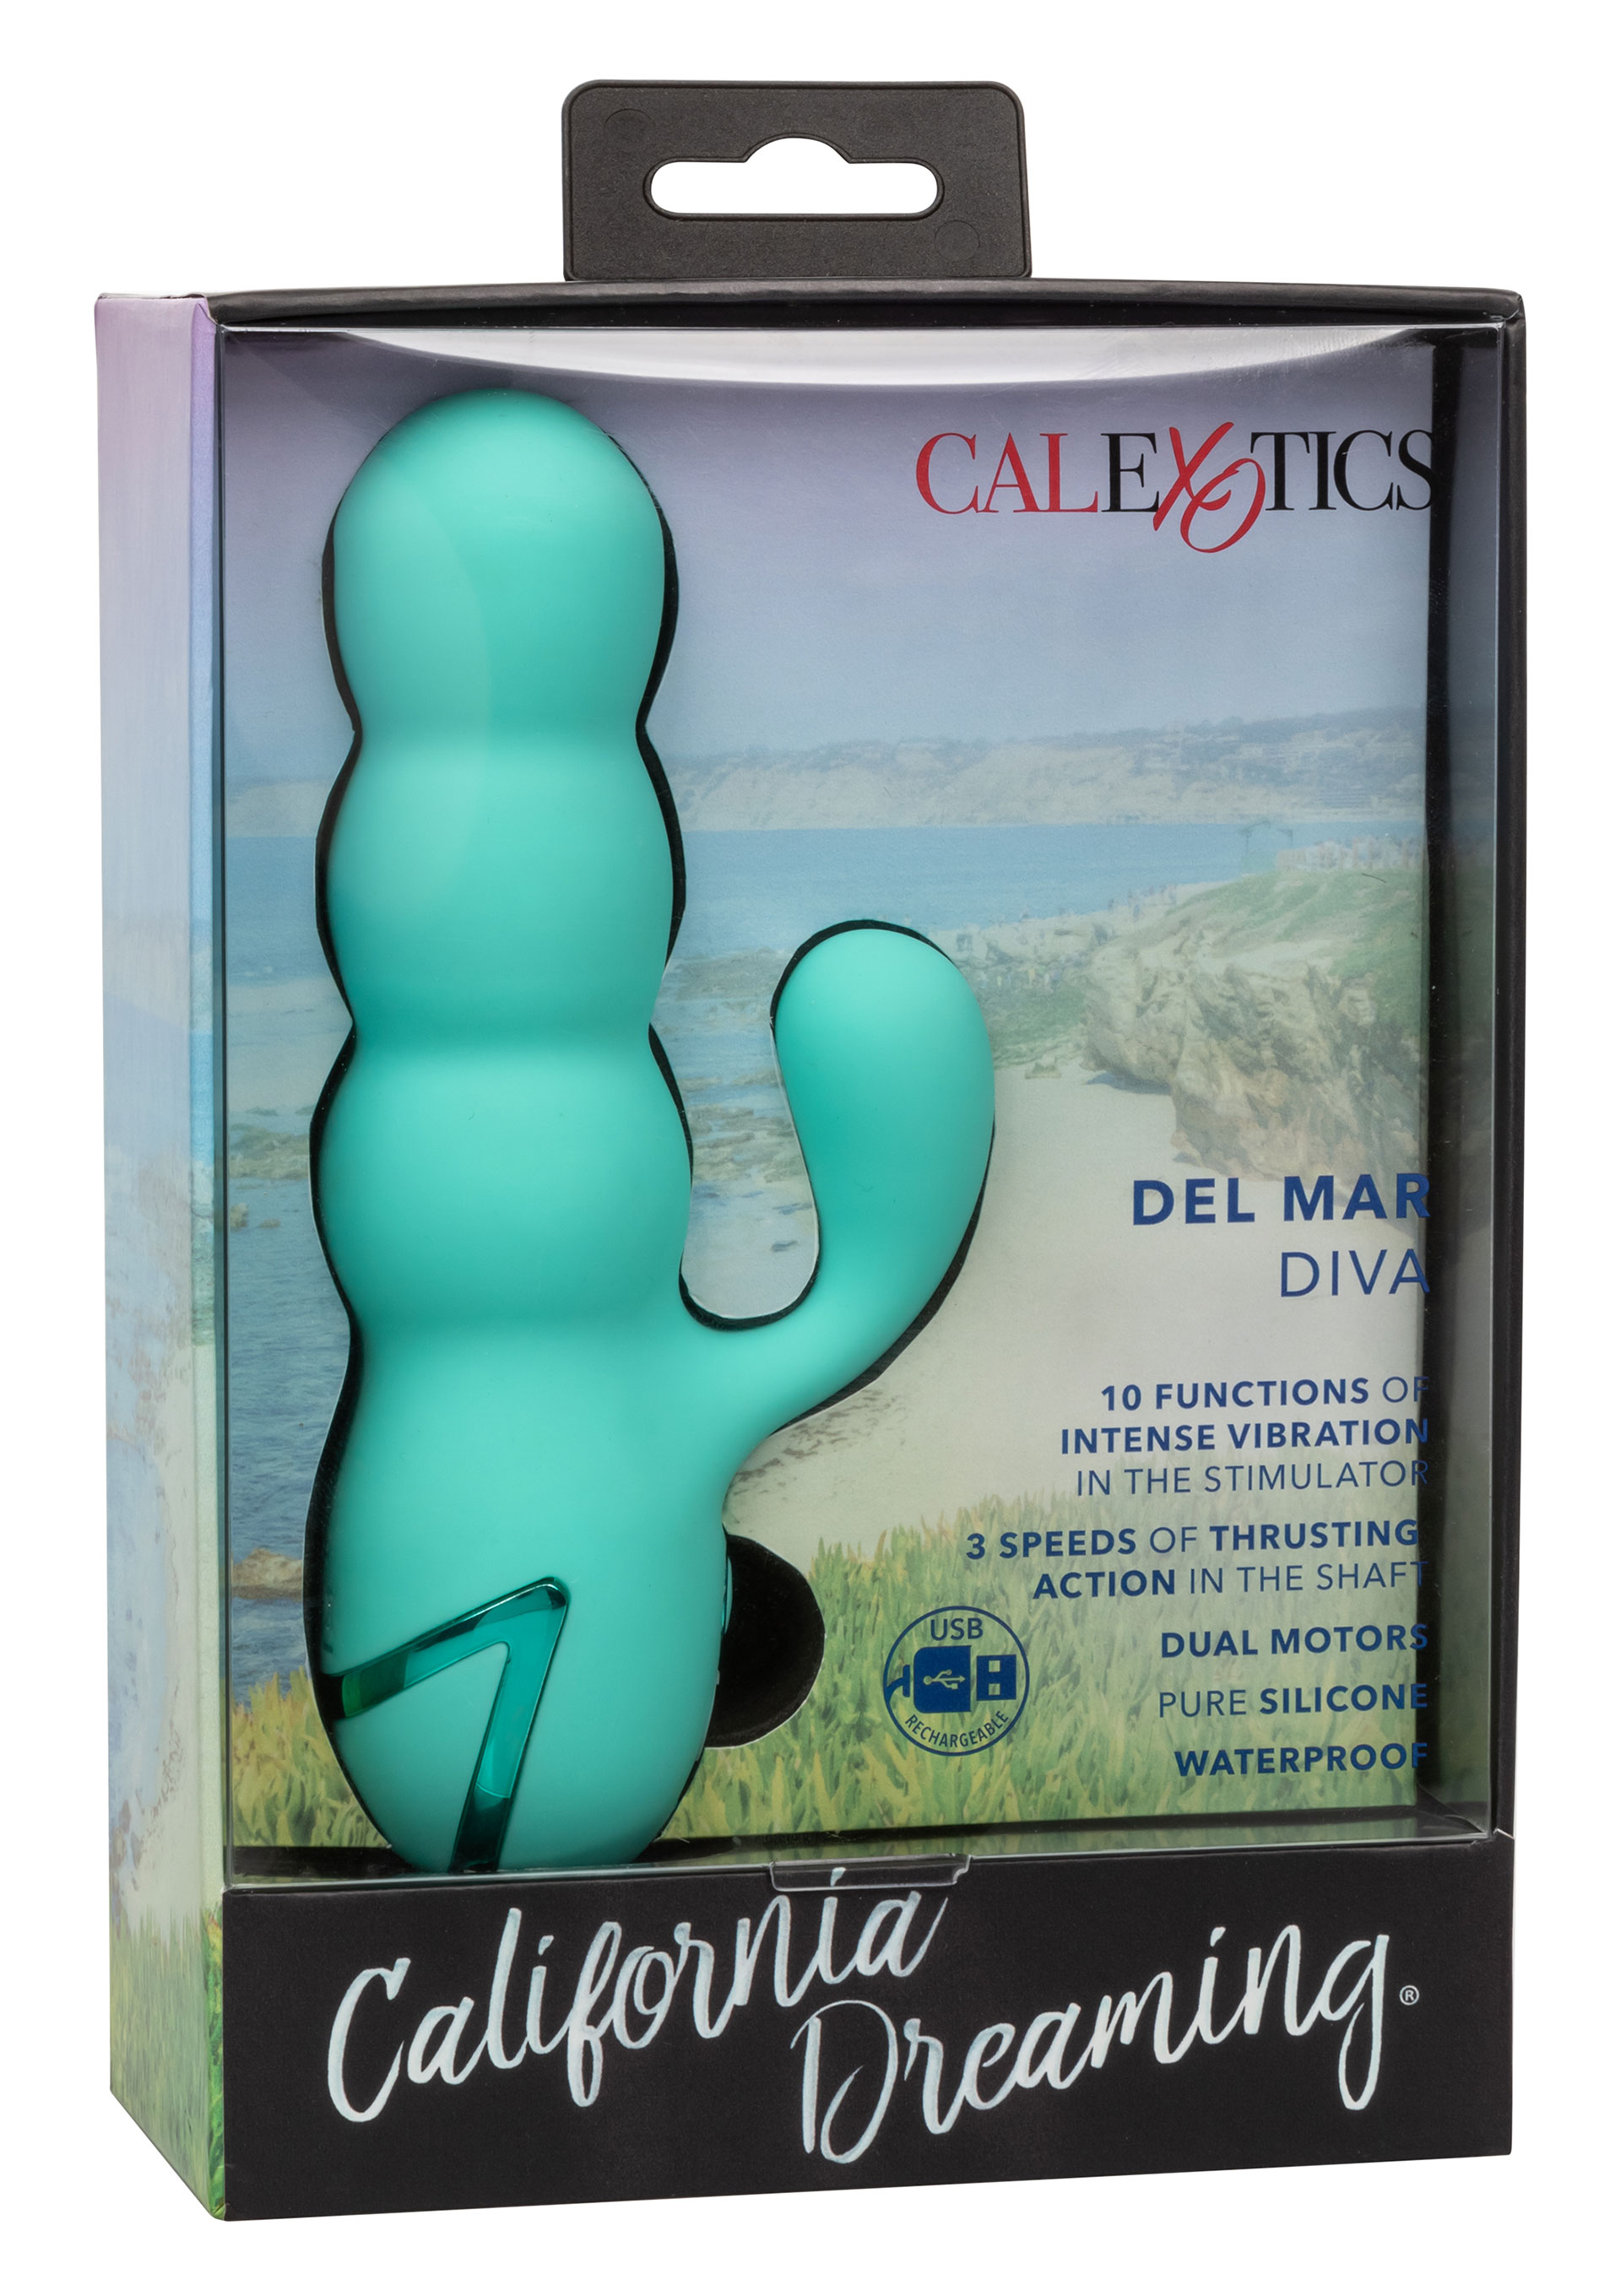 Calexotics - Del Mar Diva